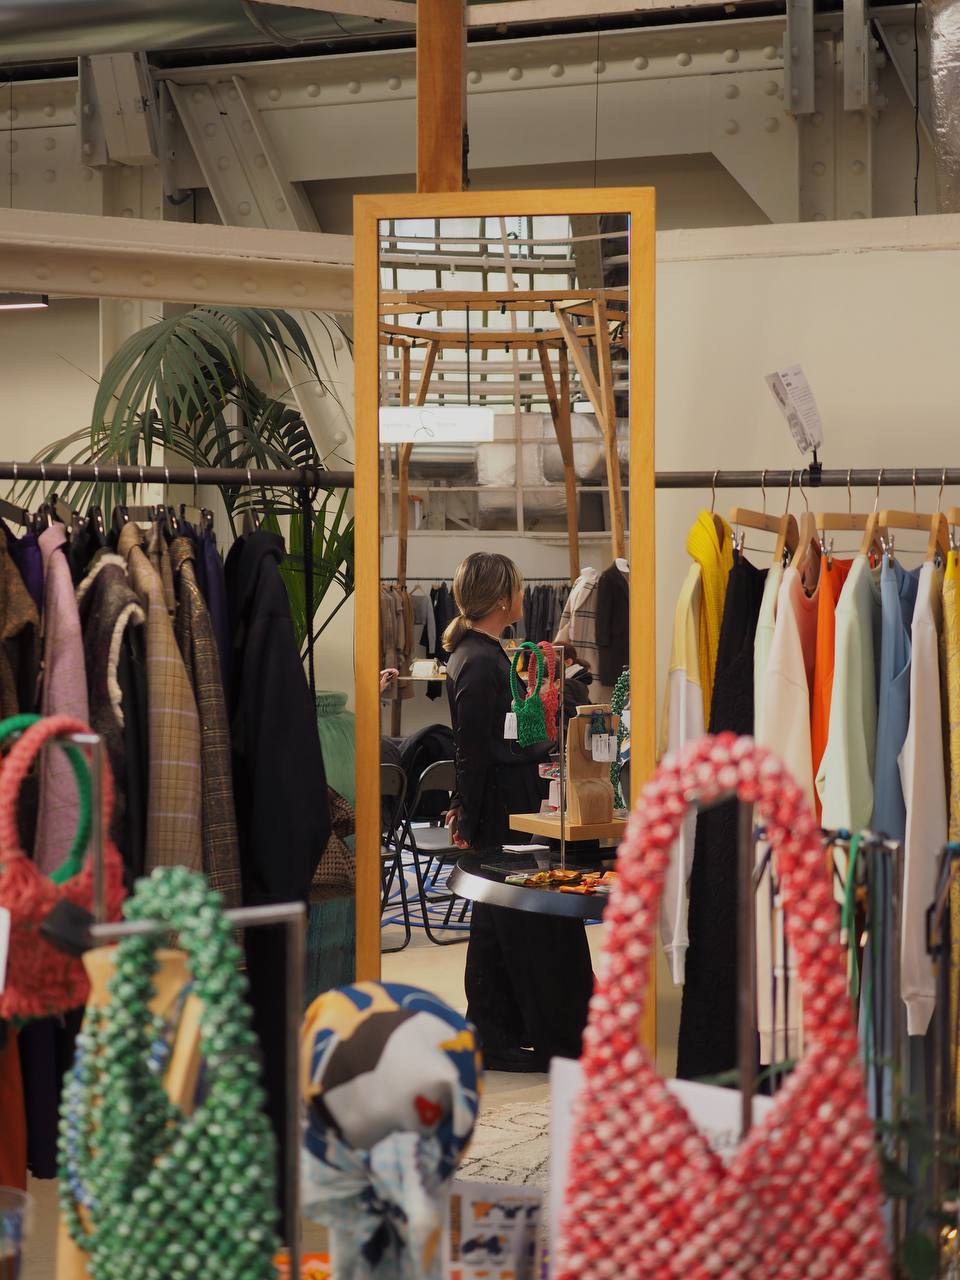 SPOGAD: український бренд зі стильними аксесуарами з локально переробленого пластику, завойовує світове визнання в ексклюзивному Fashion Green Room Printemps Haussmann Paris.